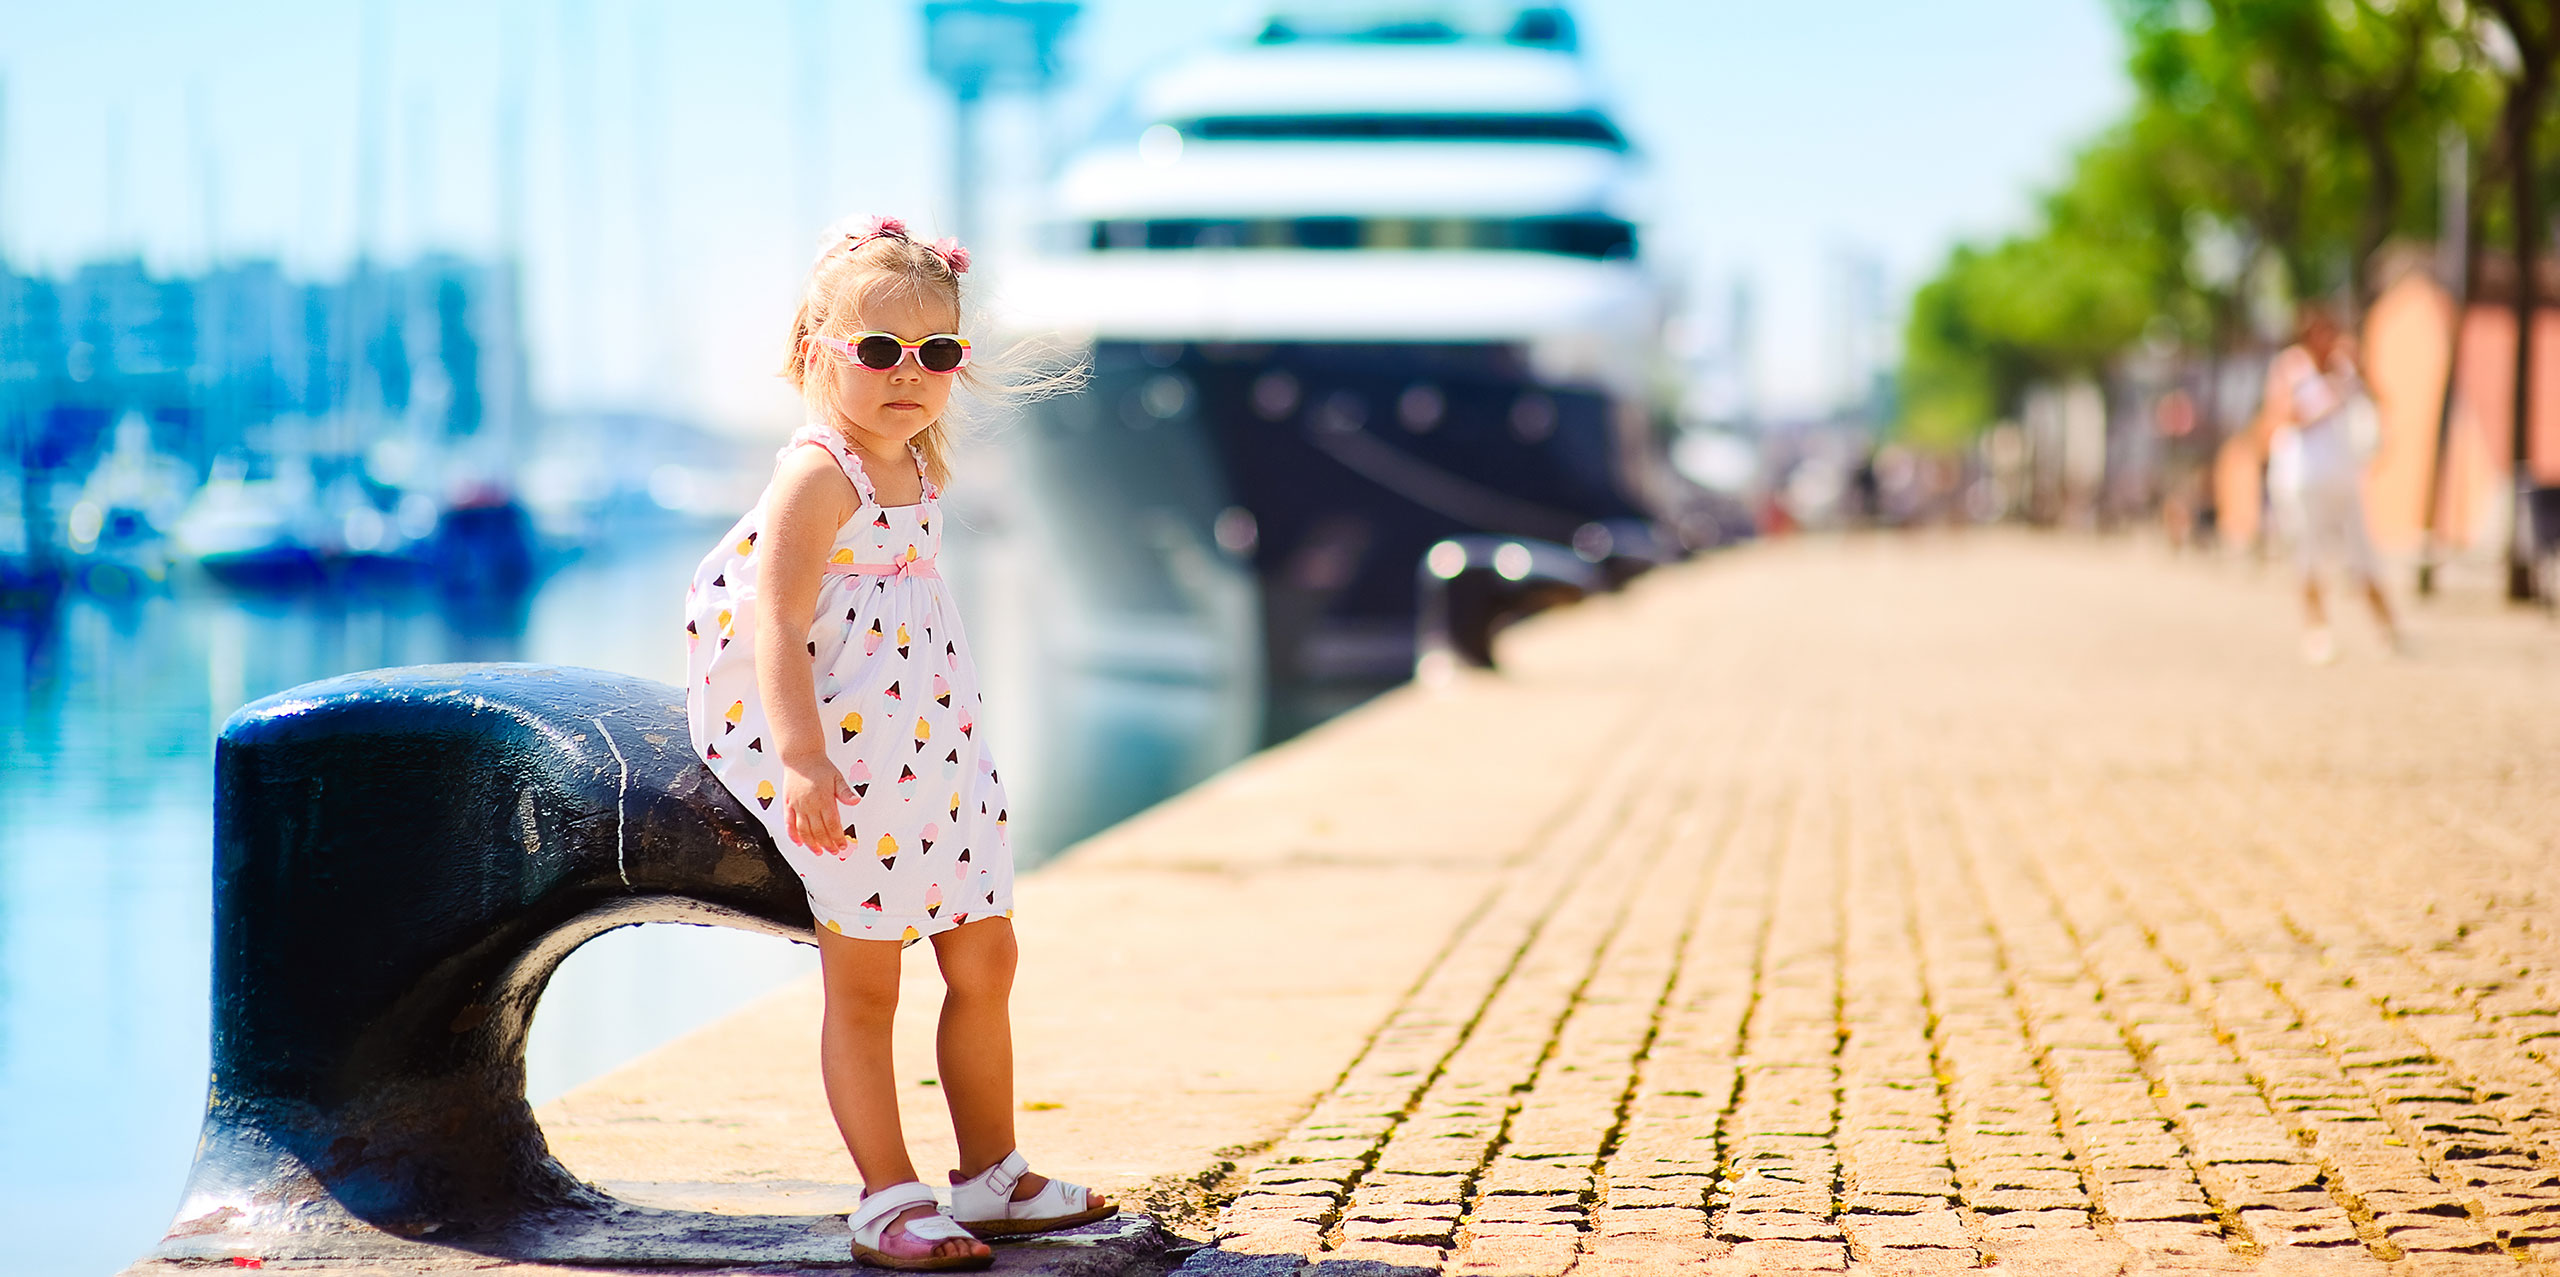 Little Girl in Cruise Port; Courtesy of Natalia Kirichenko/Shutterstock.com